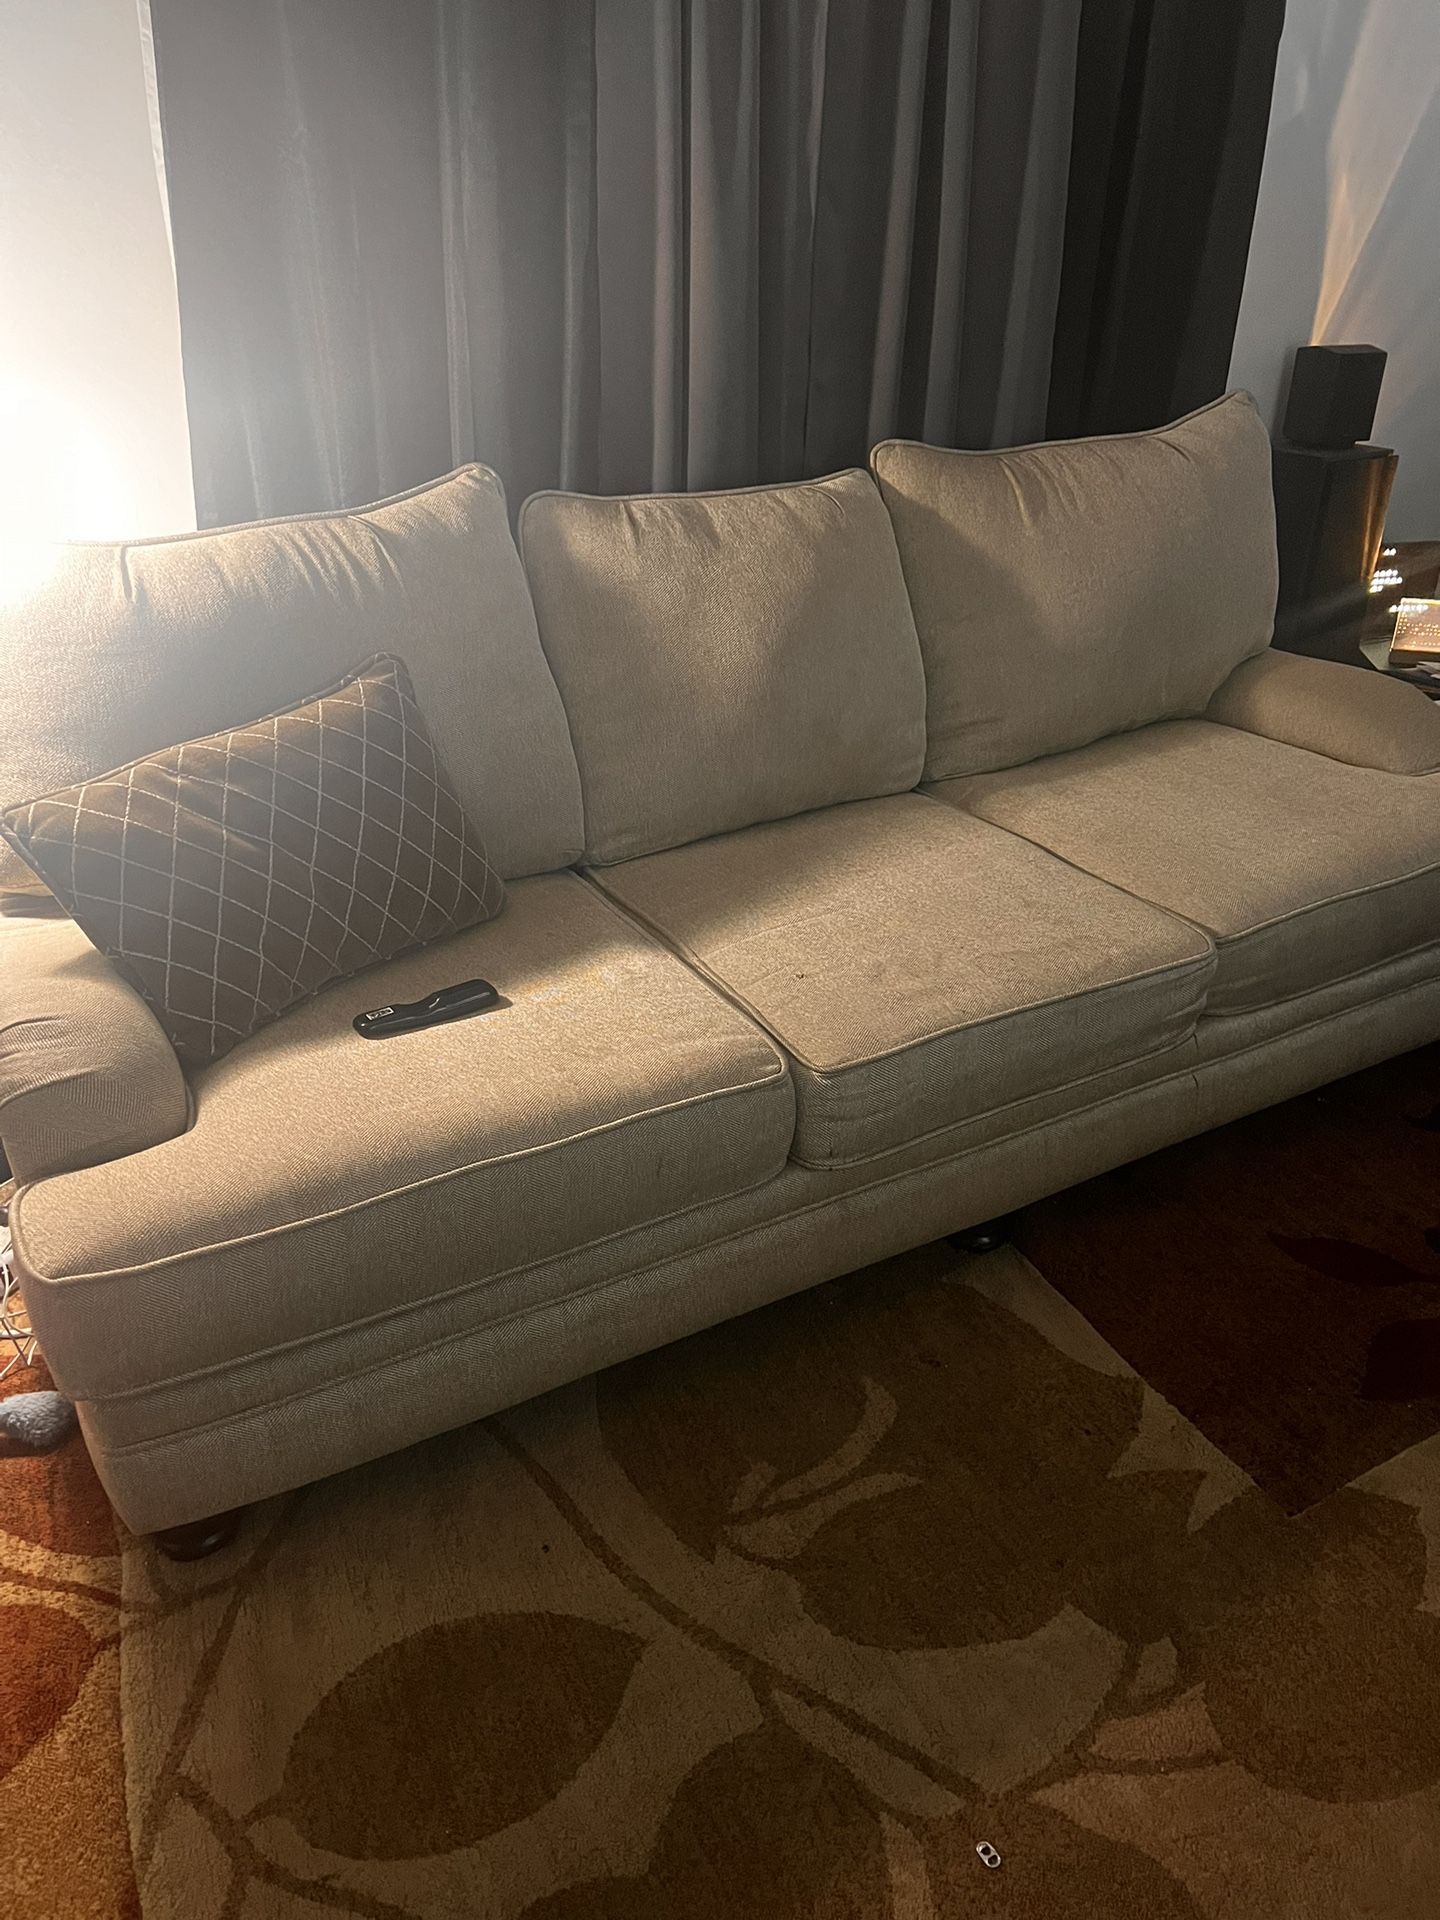 Sofa, Loveseat, Ottoman Combo